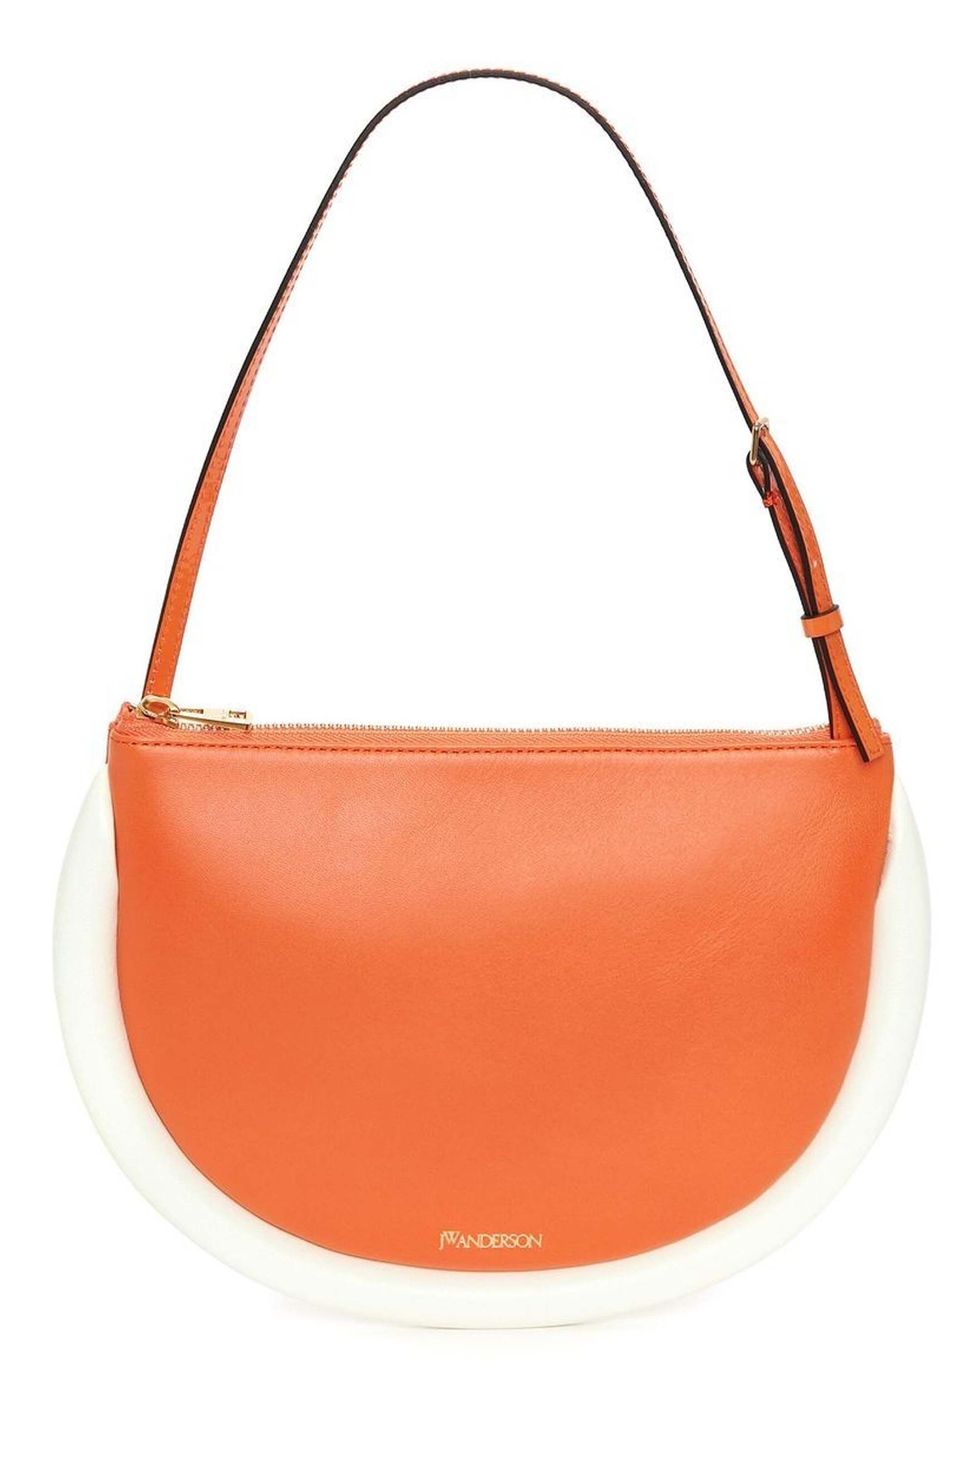 12 Best Affordable Handbag Brands 2023 – WWD